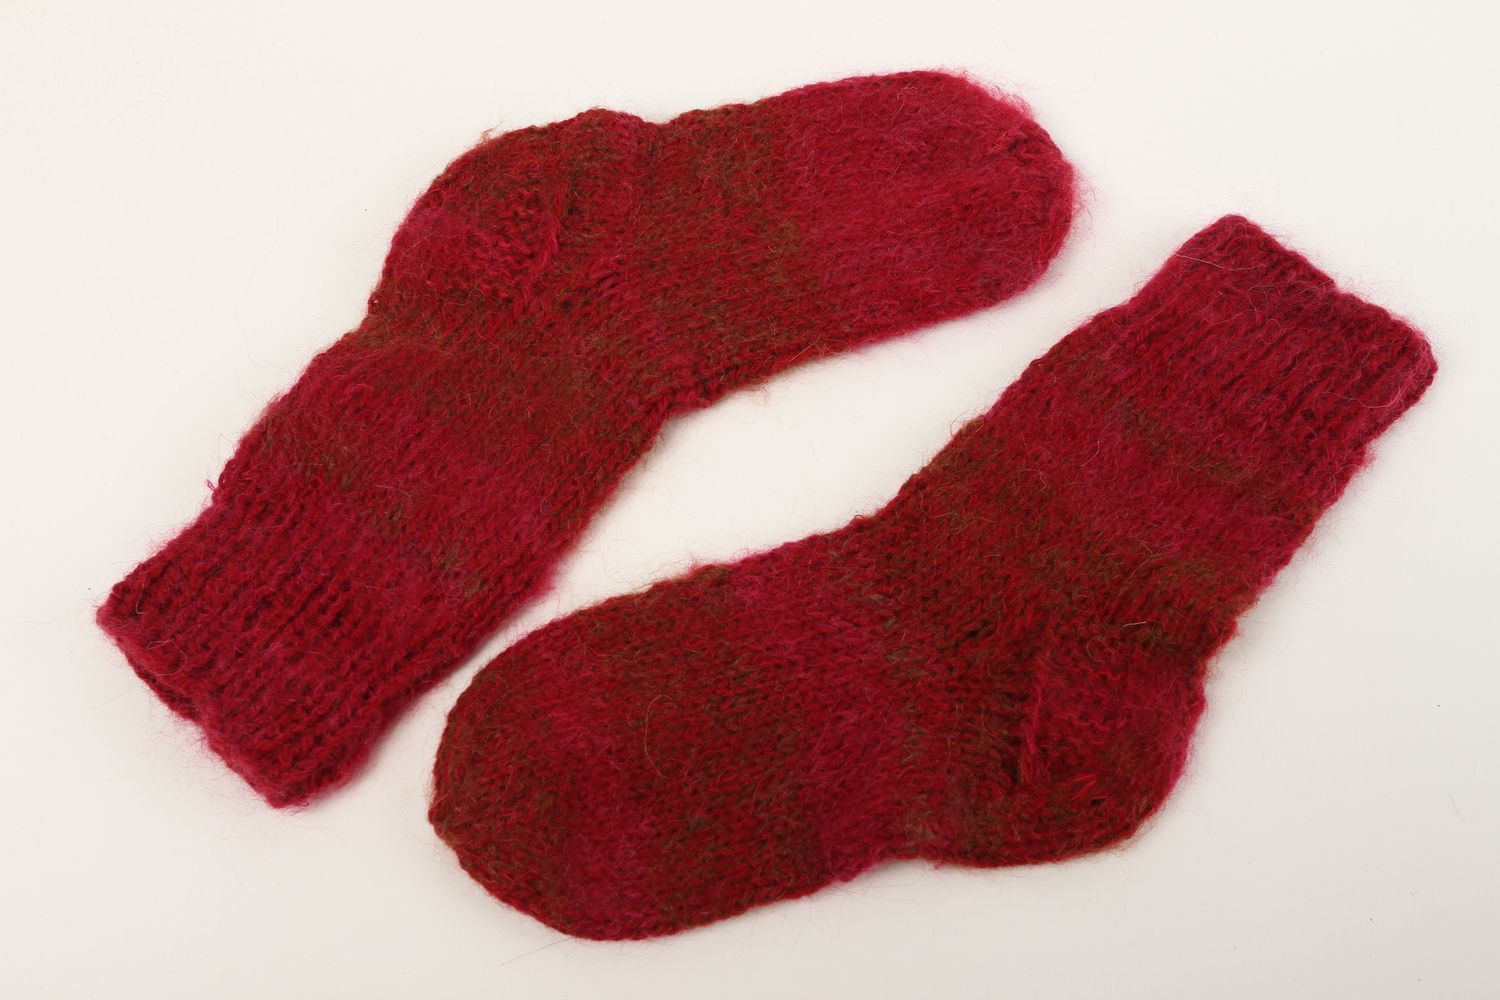 Homemade knitted woolen socks warm winter socks best wool socks gifts for women photo 2